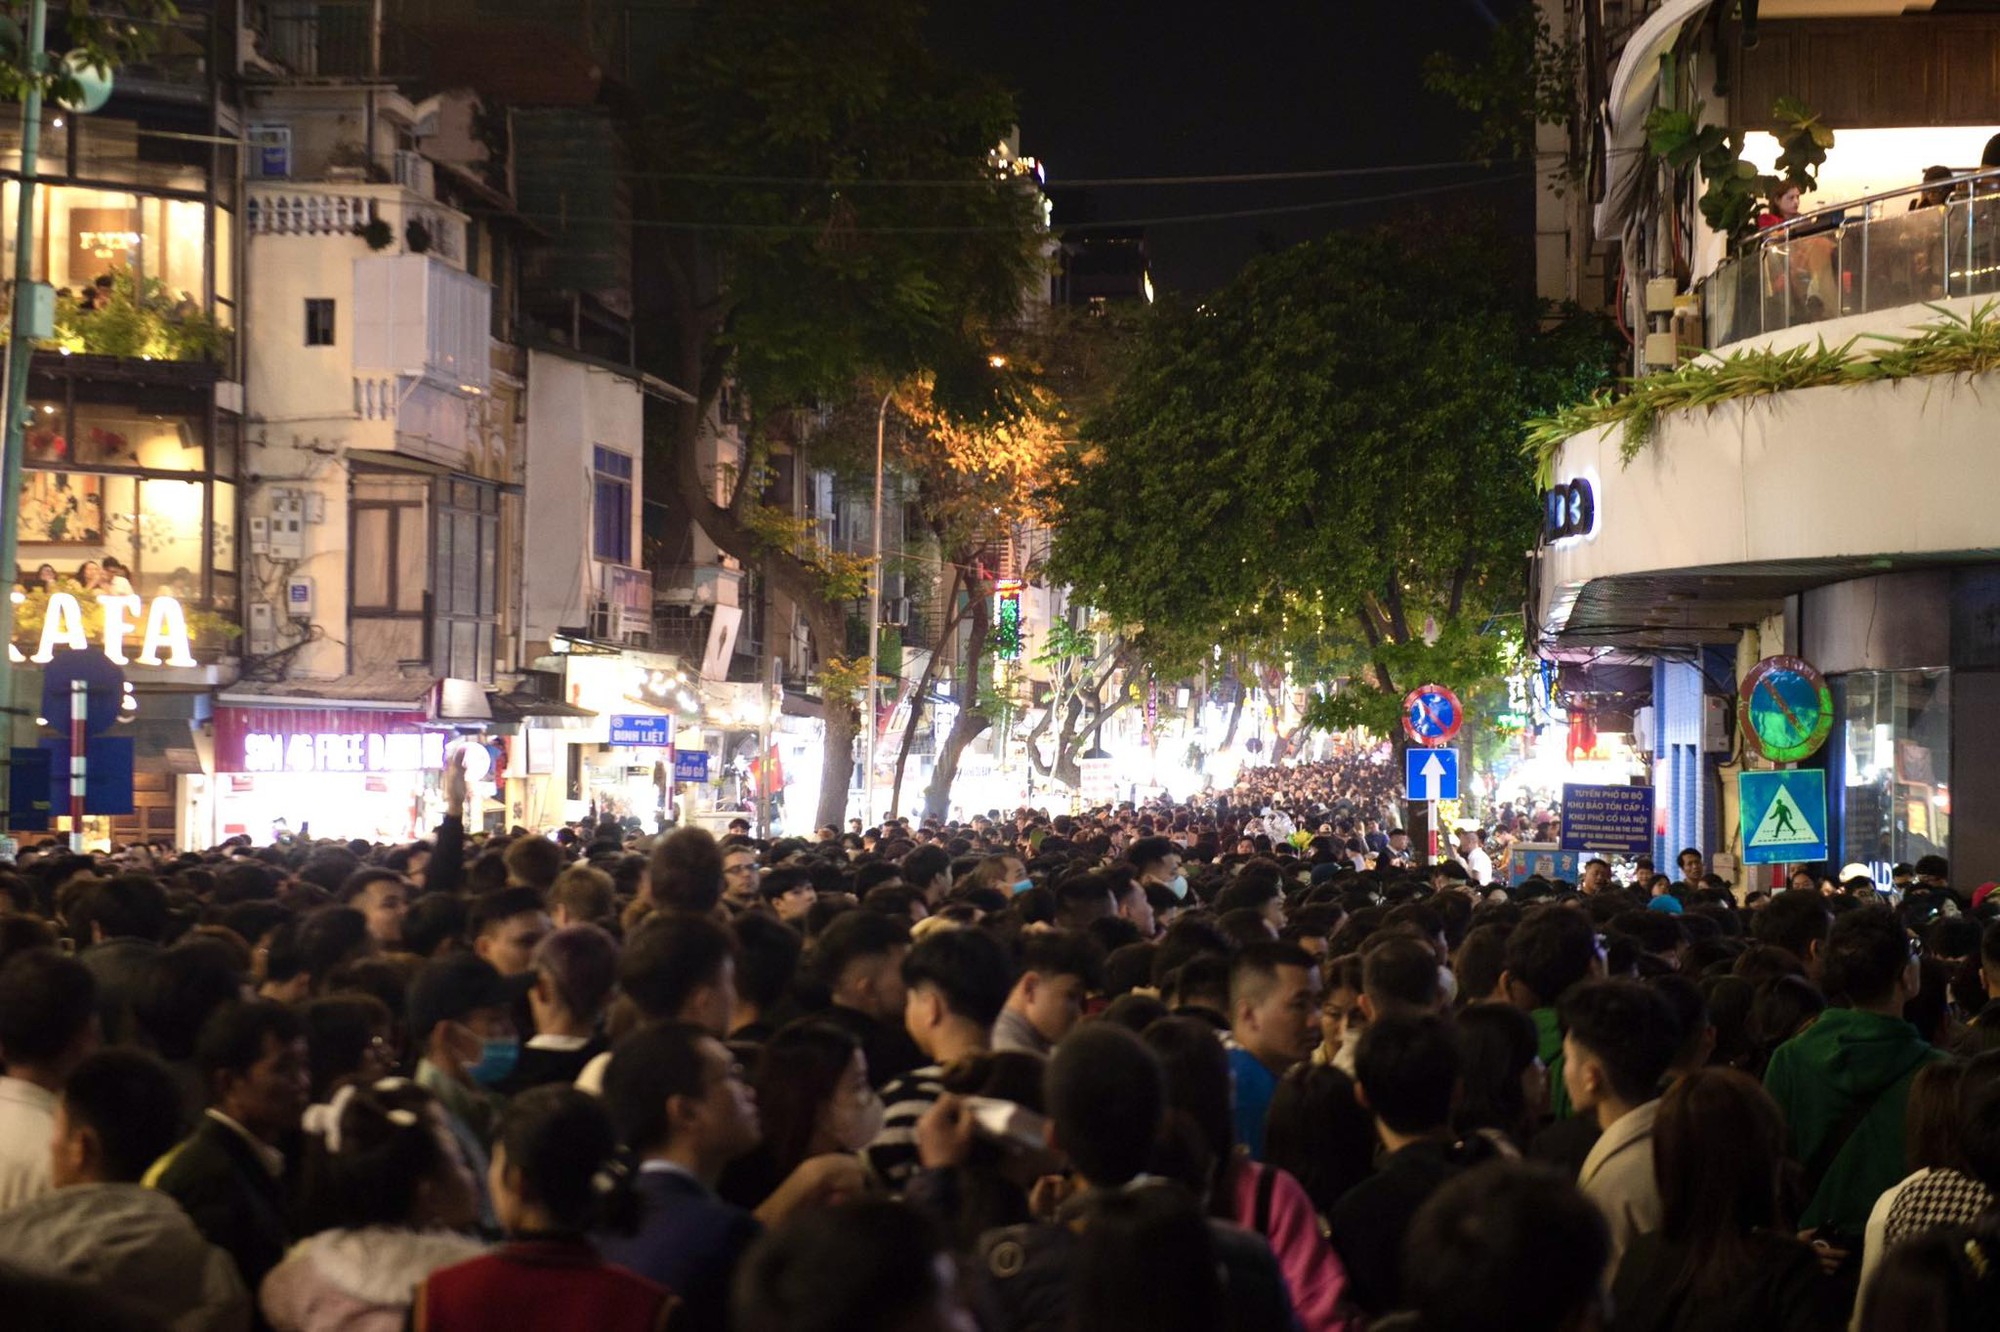 Hình ảnh nhìn đã thấy ngộp thở: Hàng nghìn người nhích từng chút ở phố đi bộ Hà Nội chờ giao thừa- Ảnh 10.